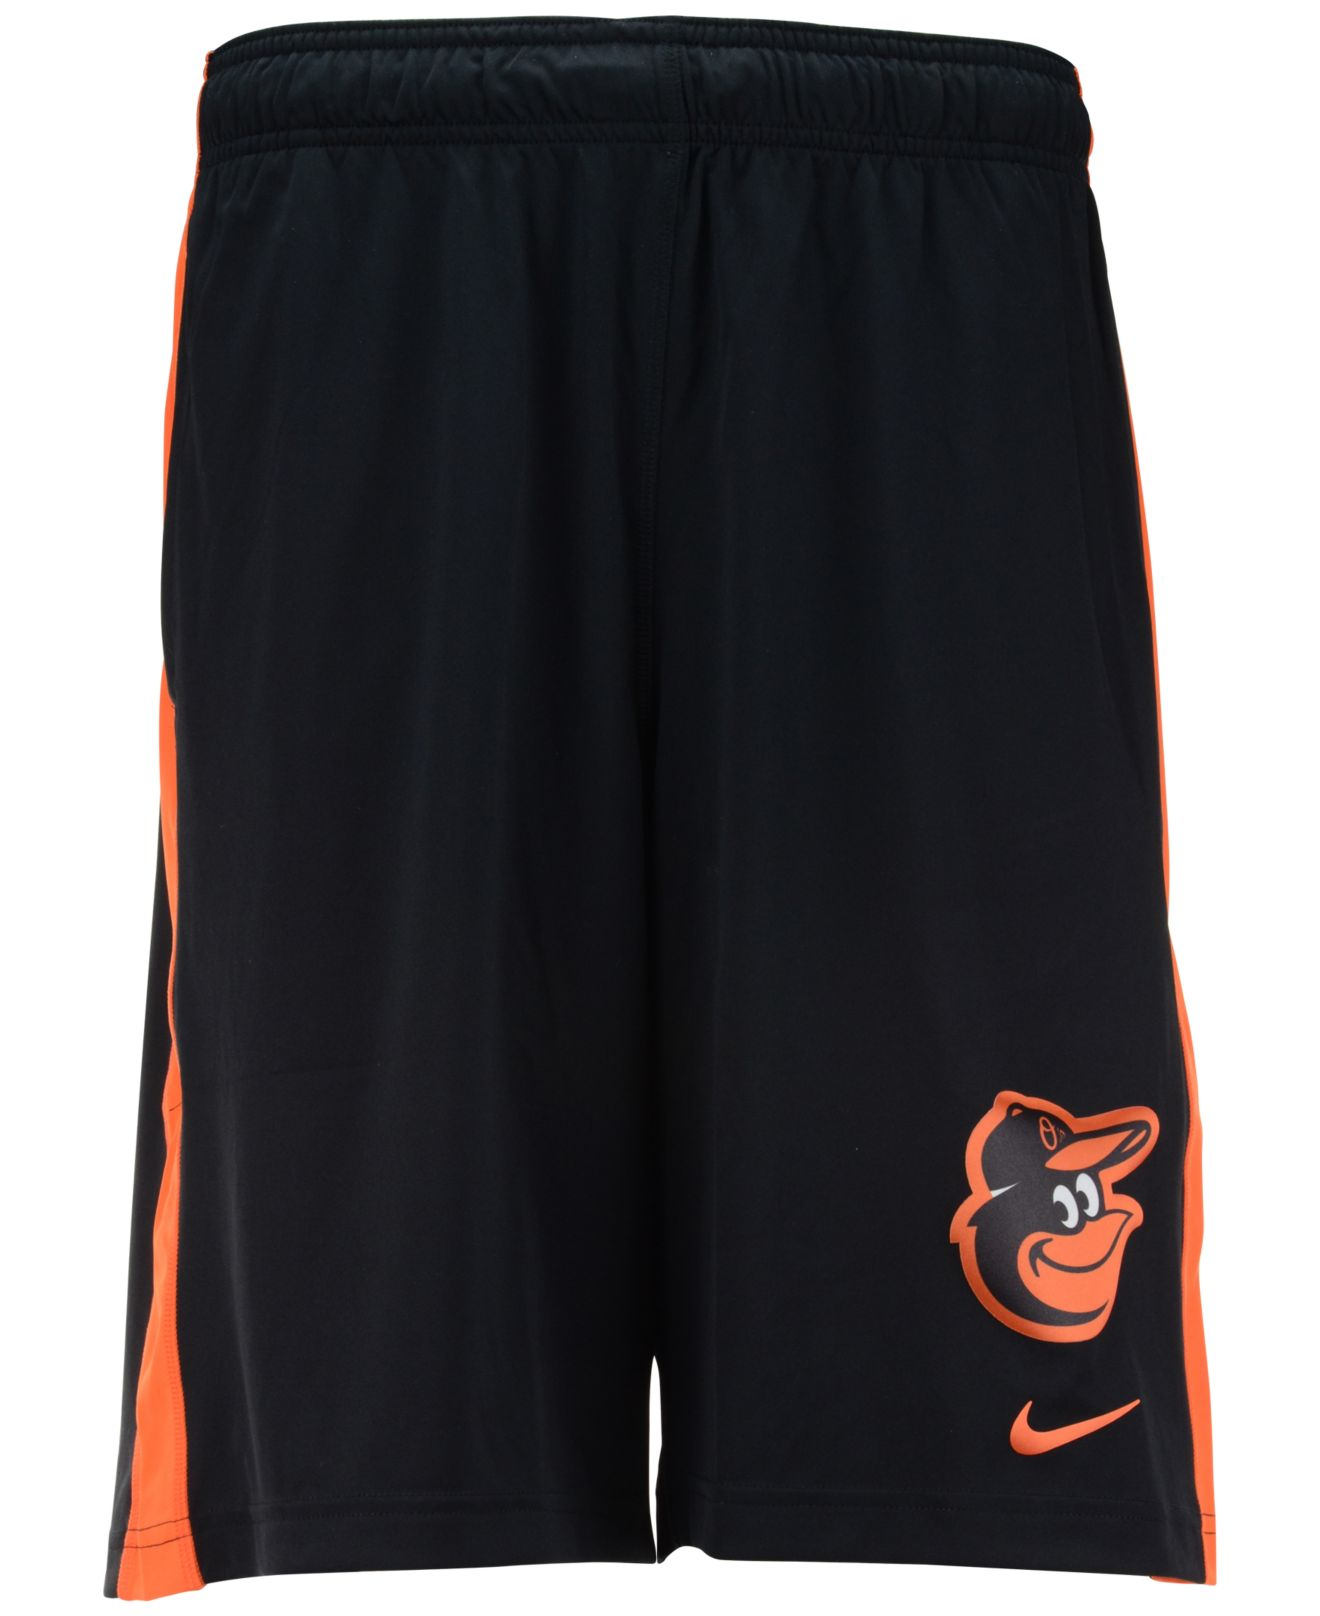 Lyst - Nike Men's Baltimore Orioles Fly Shorts in Black for Men